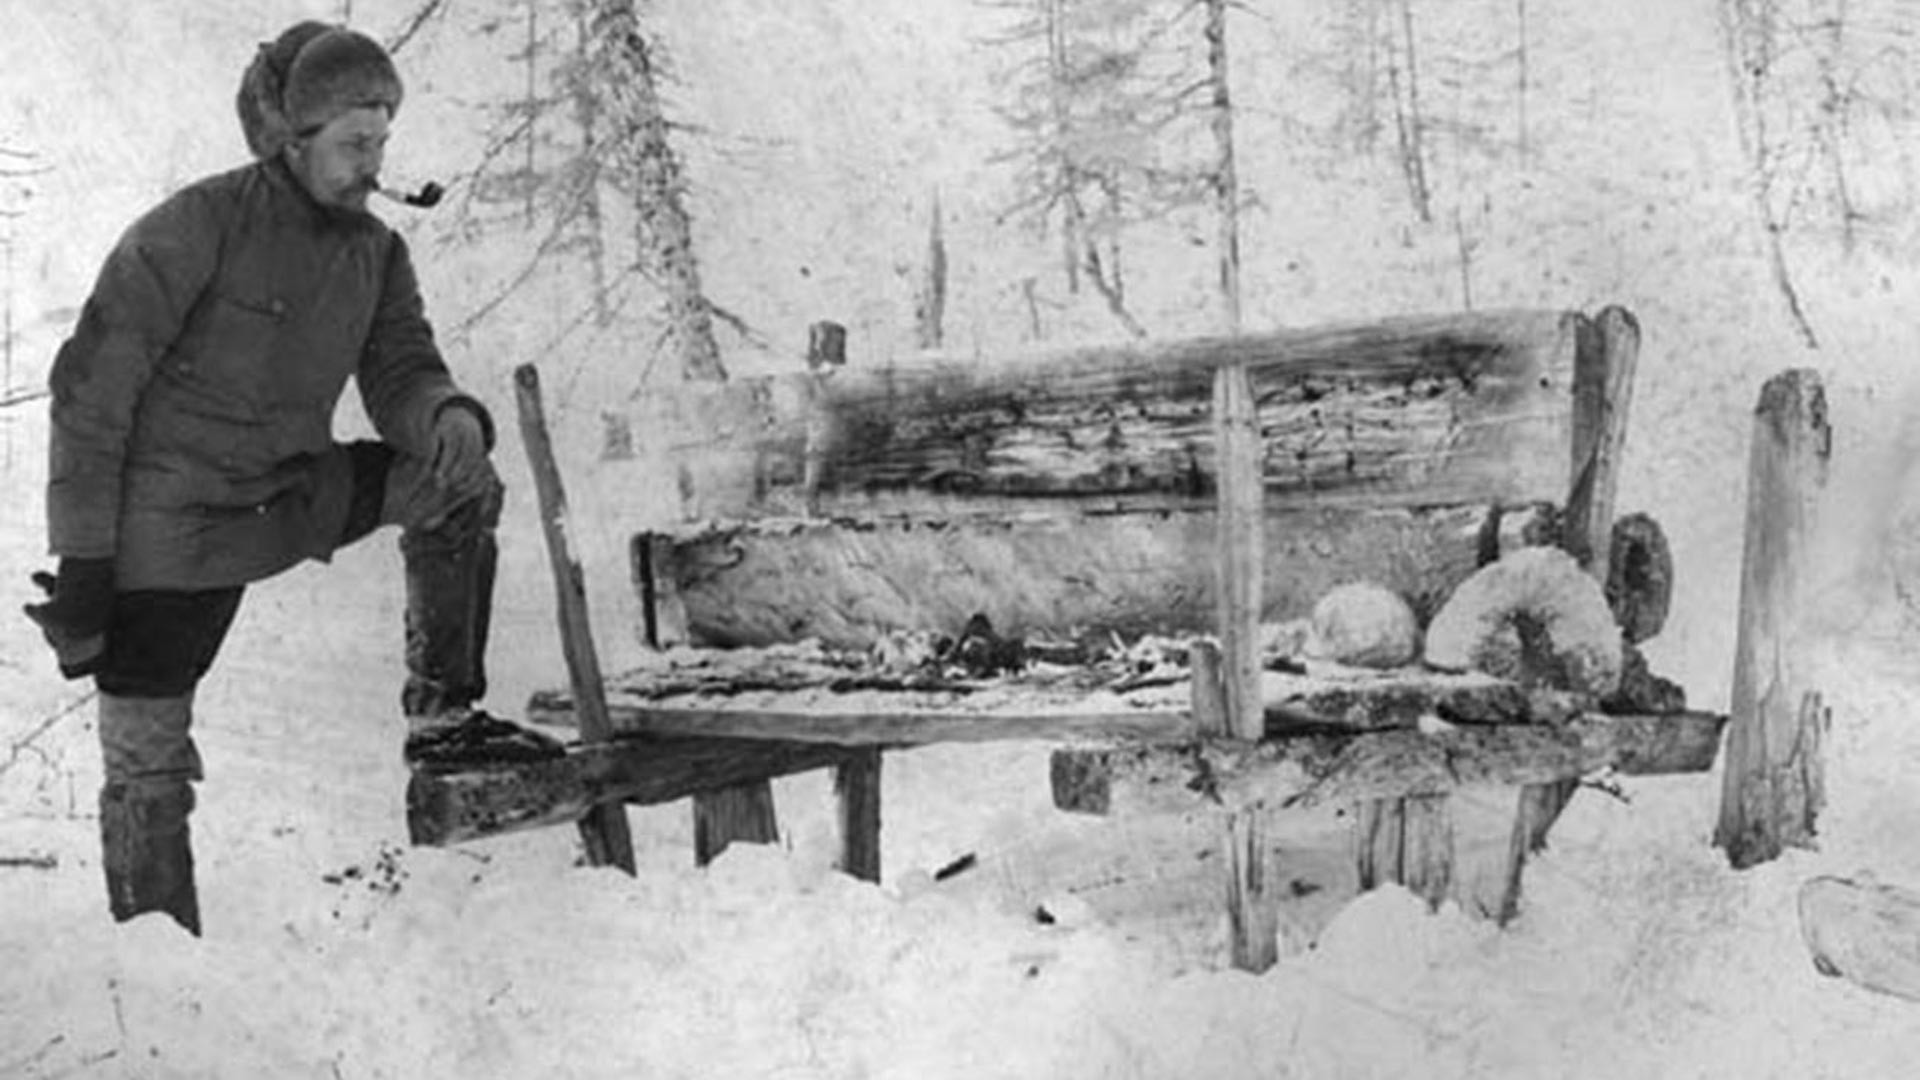 V. Vasilyev, seorang etnografer, dan kuburan orang Yakut di atas tanah di wilayah Yenisey, Siberia, 1905.